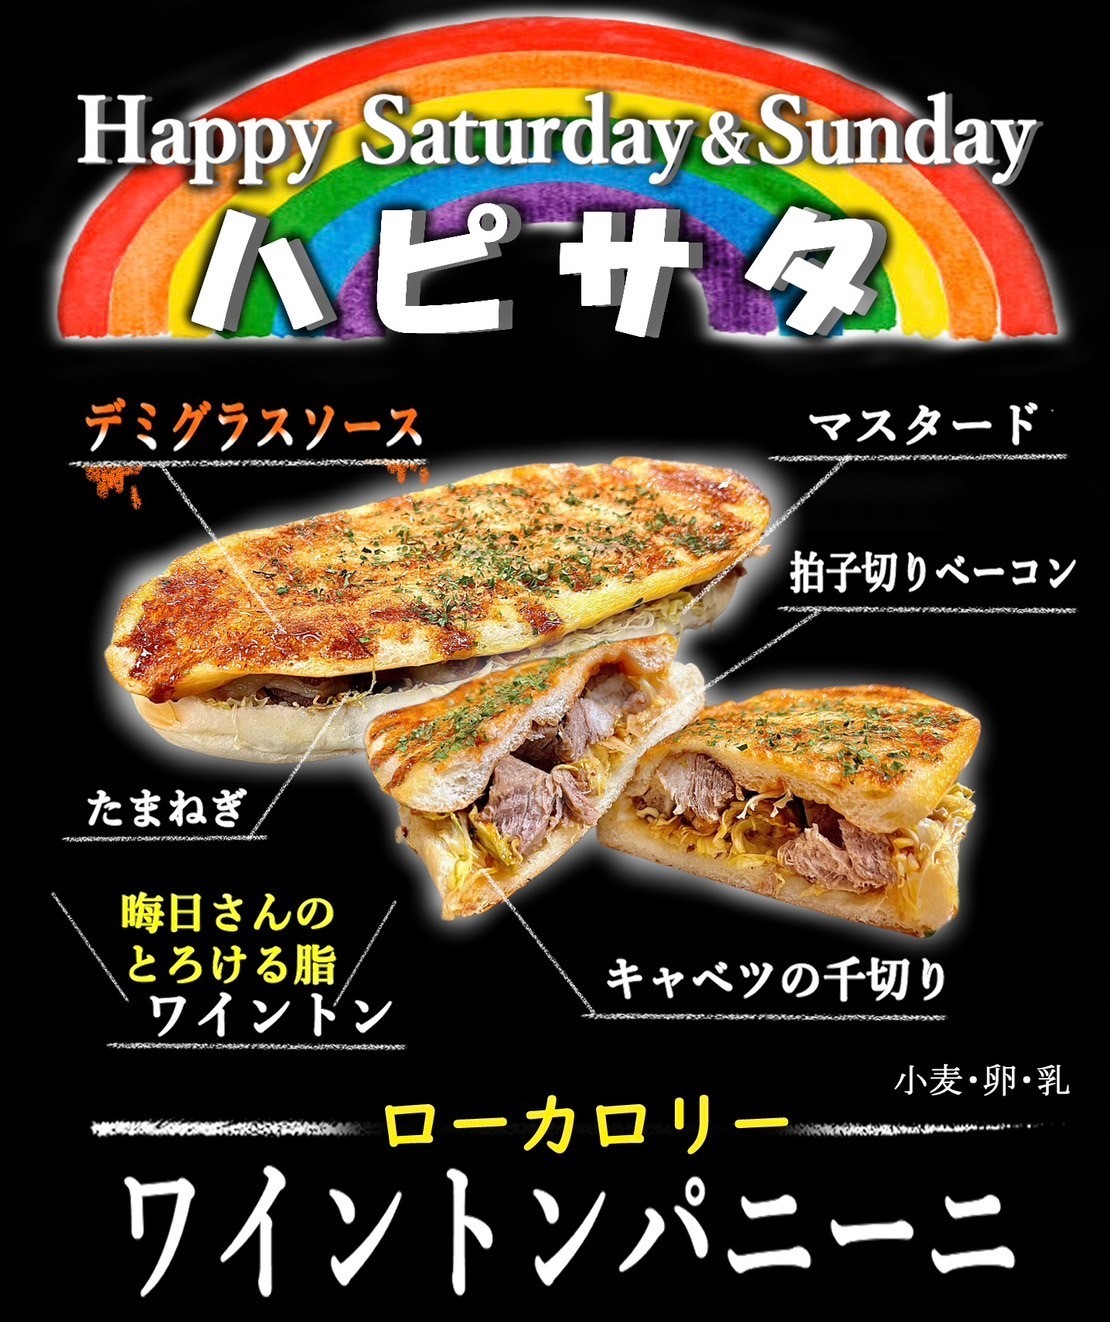 【ハピサタ】  ★Happy Saturday&Sunday★